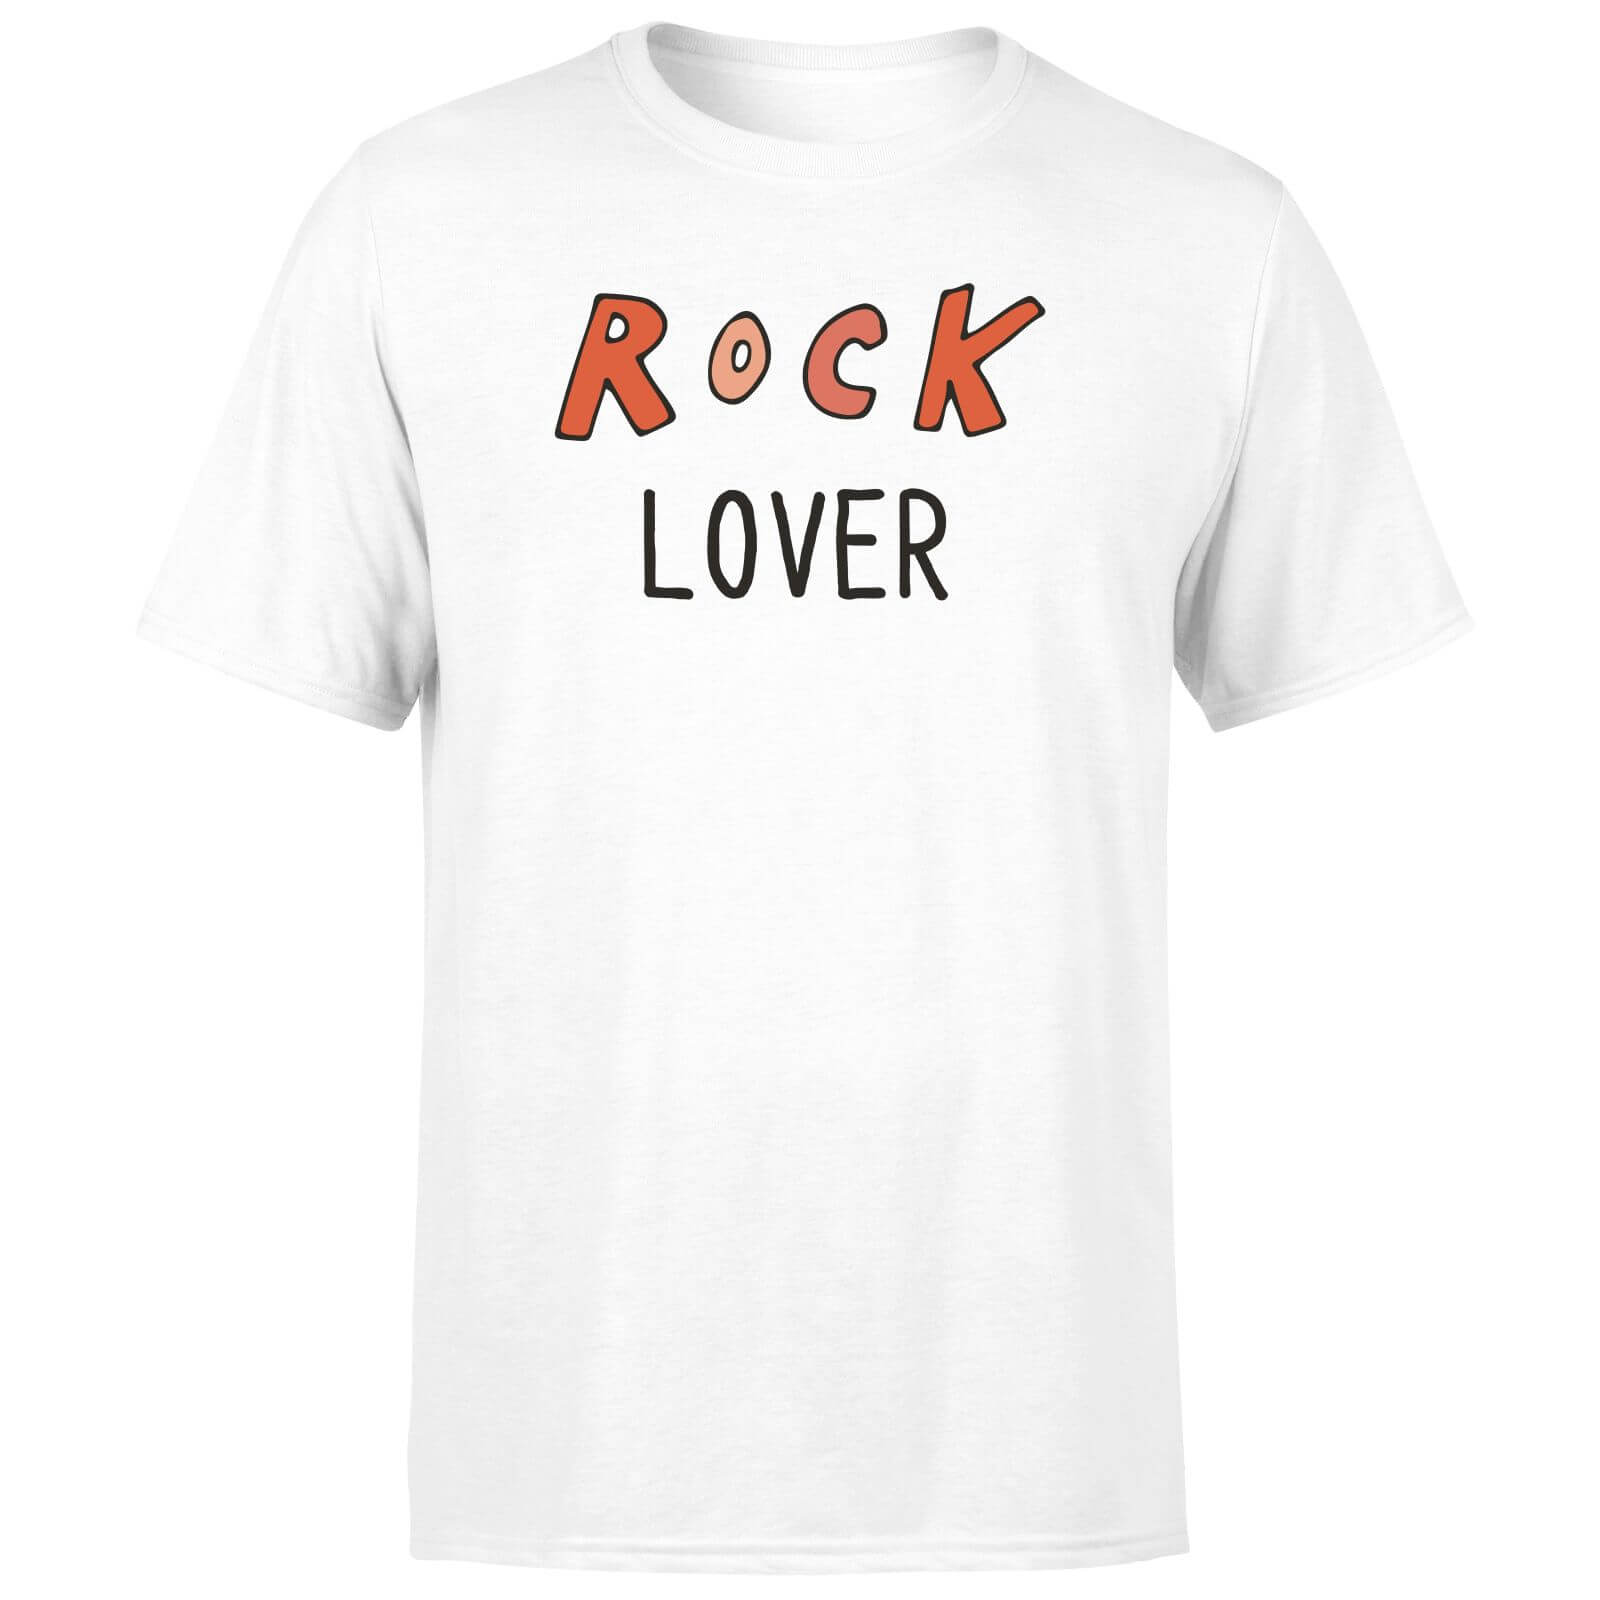 Rock Lover Men's T-Shirt - White - XS - White